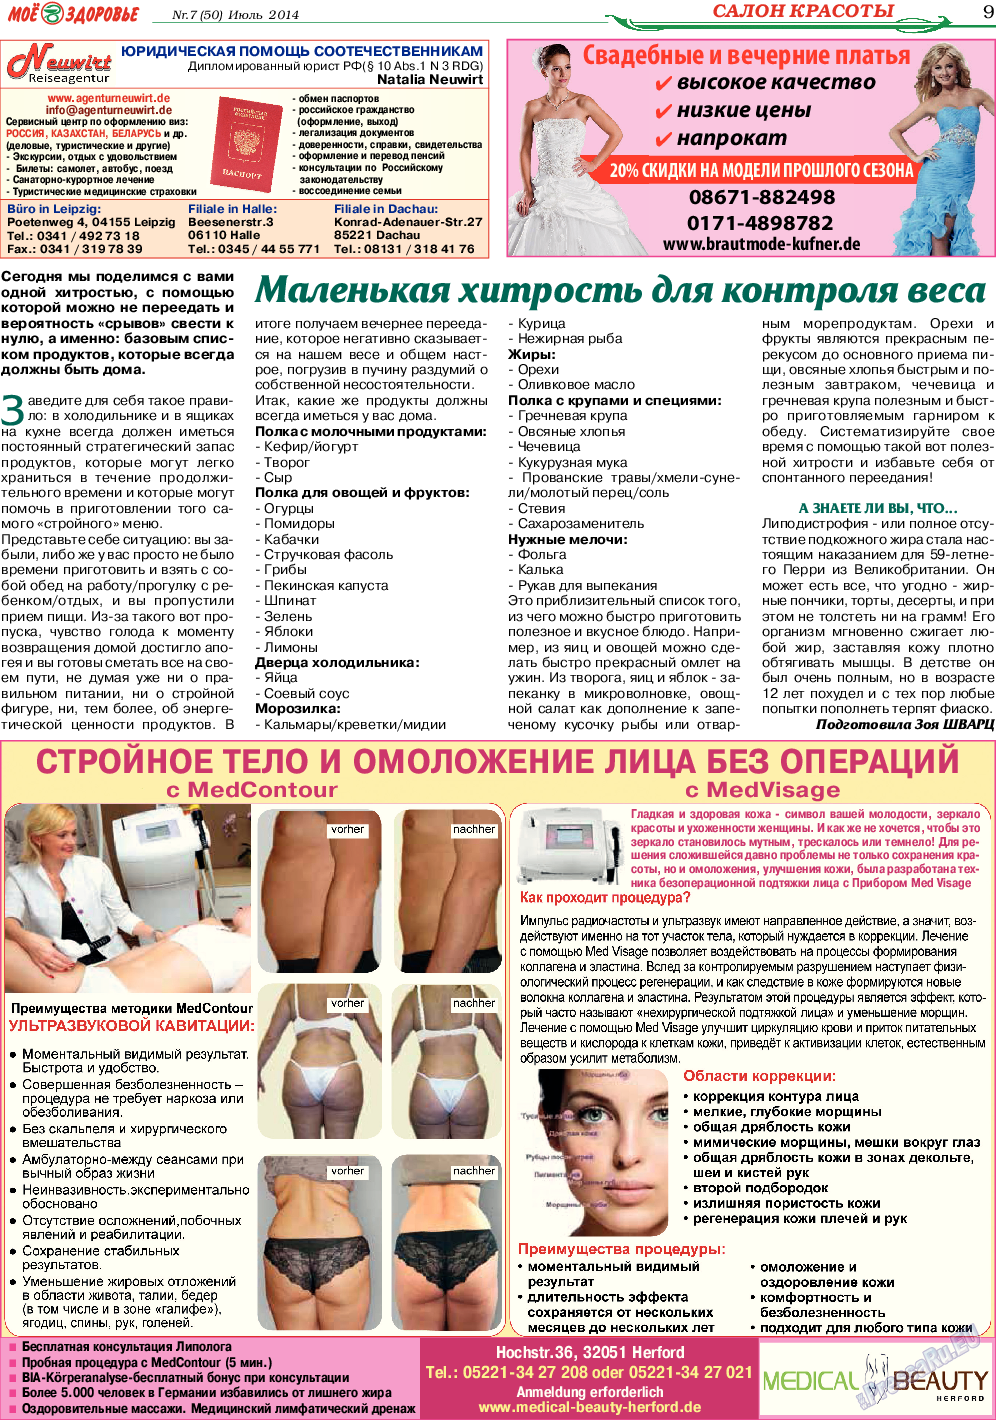 Кругозор, газета. 2014 №7 стр.9